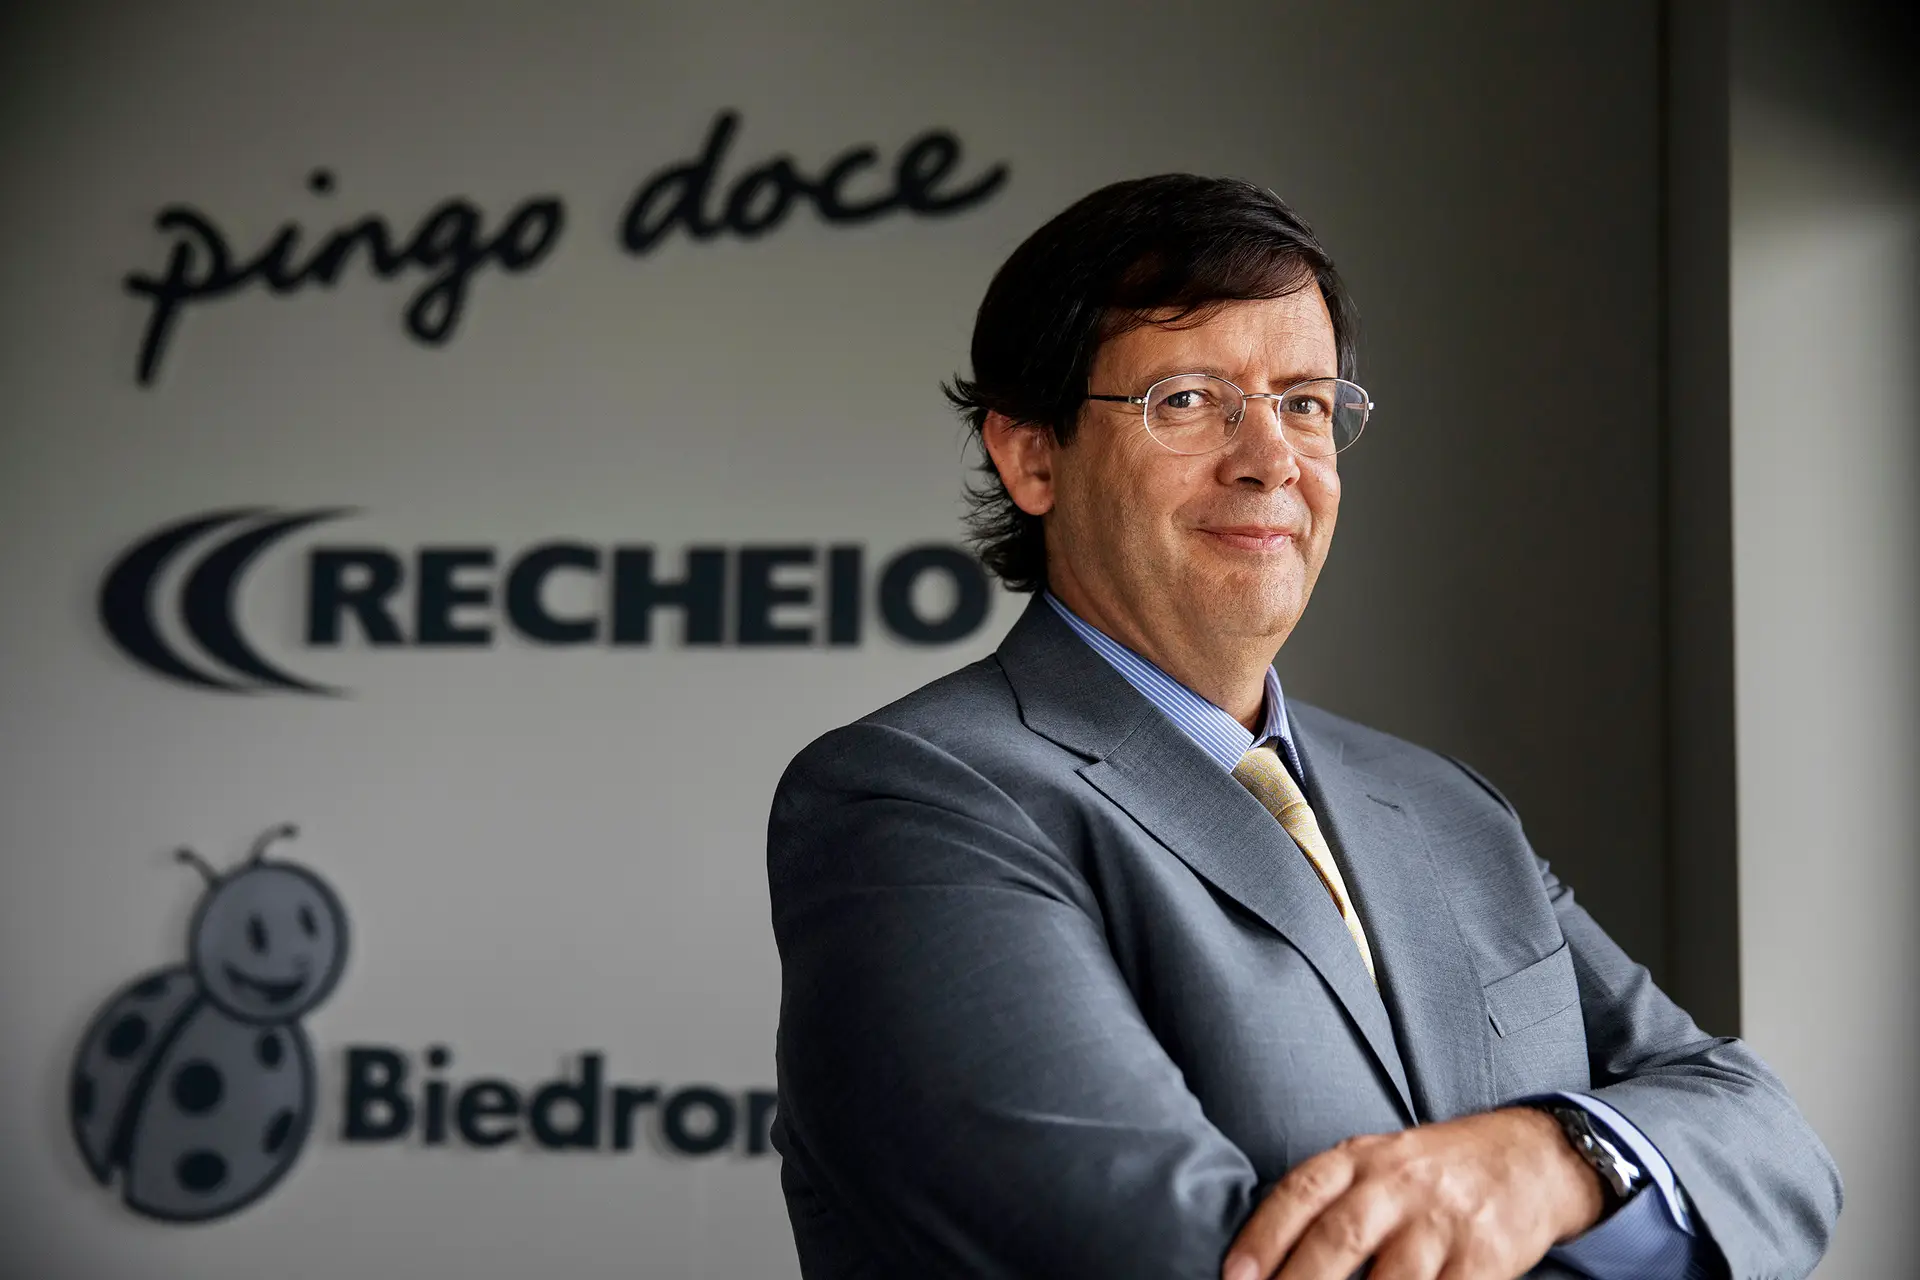 Pedro Soares dos Santos, presidente executivo da Jerónimo Martins, teve em 2022 uma remuneração bruta de 3,7 milhões de euros